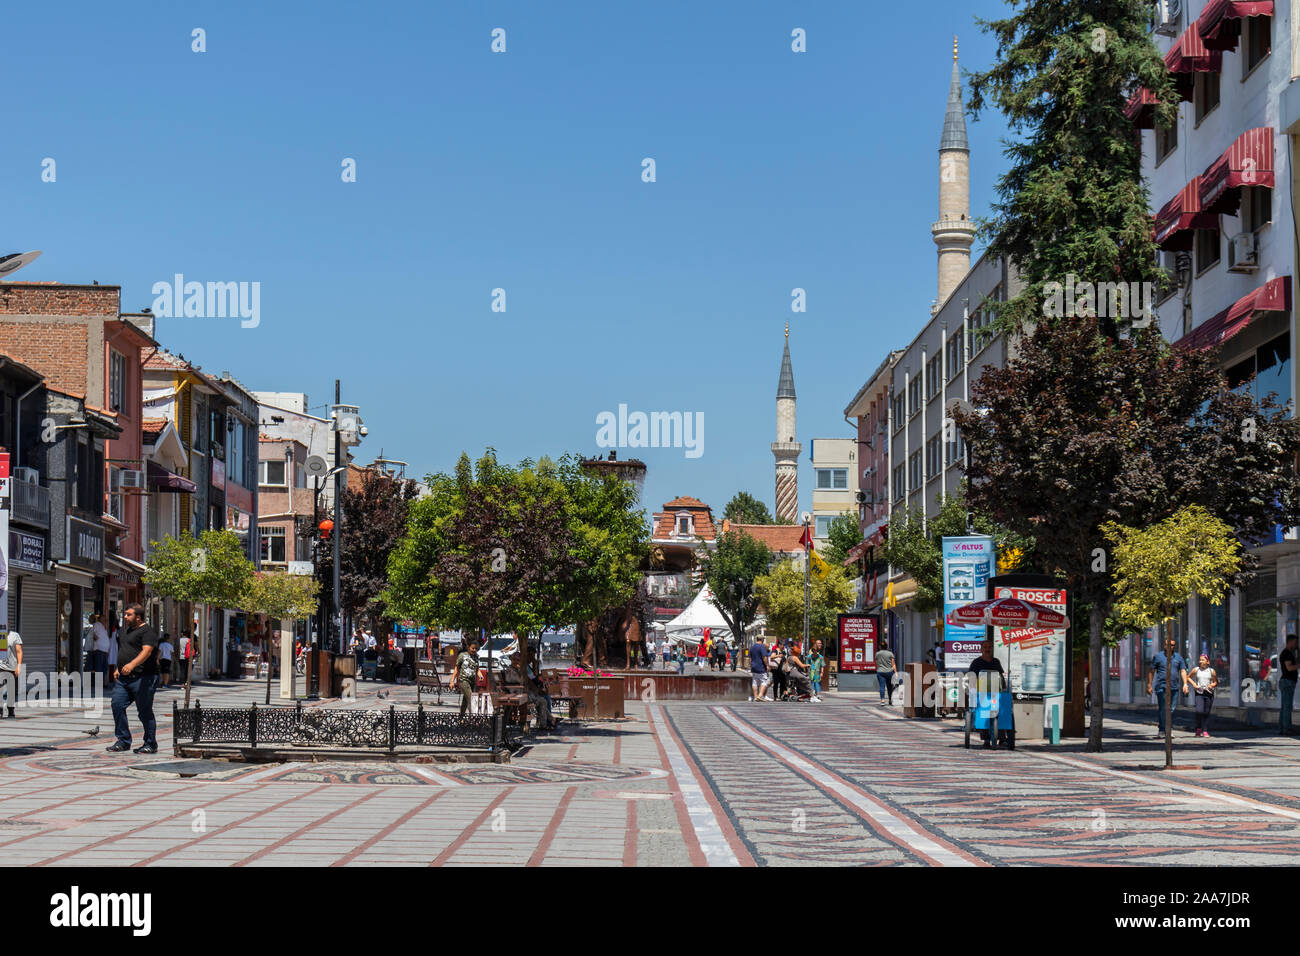 EDIRNE, Türkei - 28. JULI 2019: Einkaufen Fußgängerzone im Zentrum der Stadt Edirne, Osten Thrakien, Türkei Stockfoto